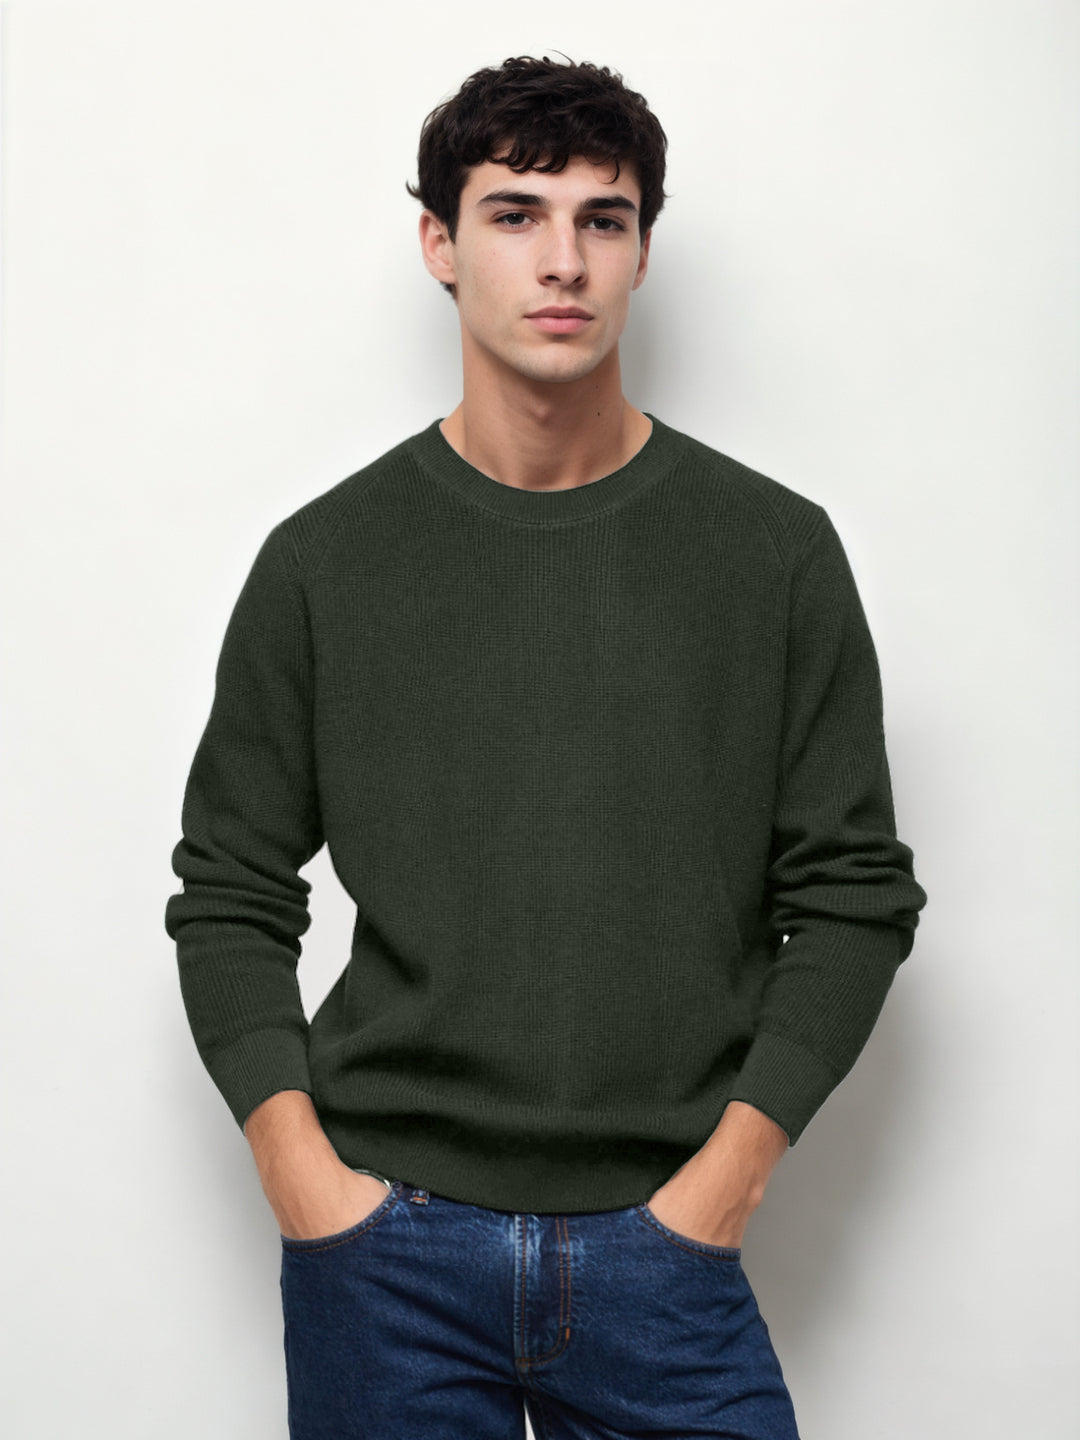 Hemsters Olive green Knitted Full Sleevs Sweatshirt For men